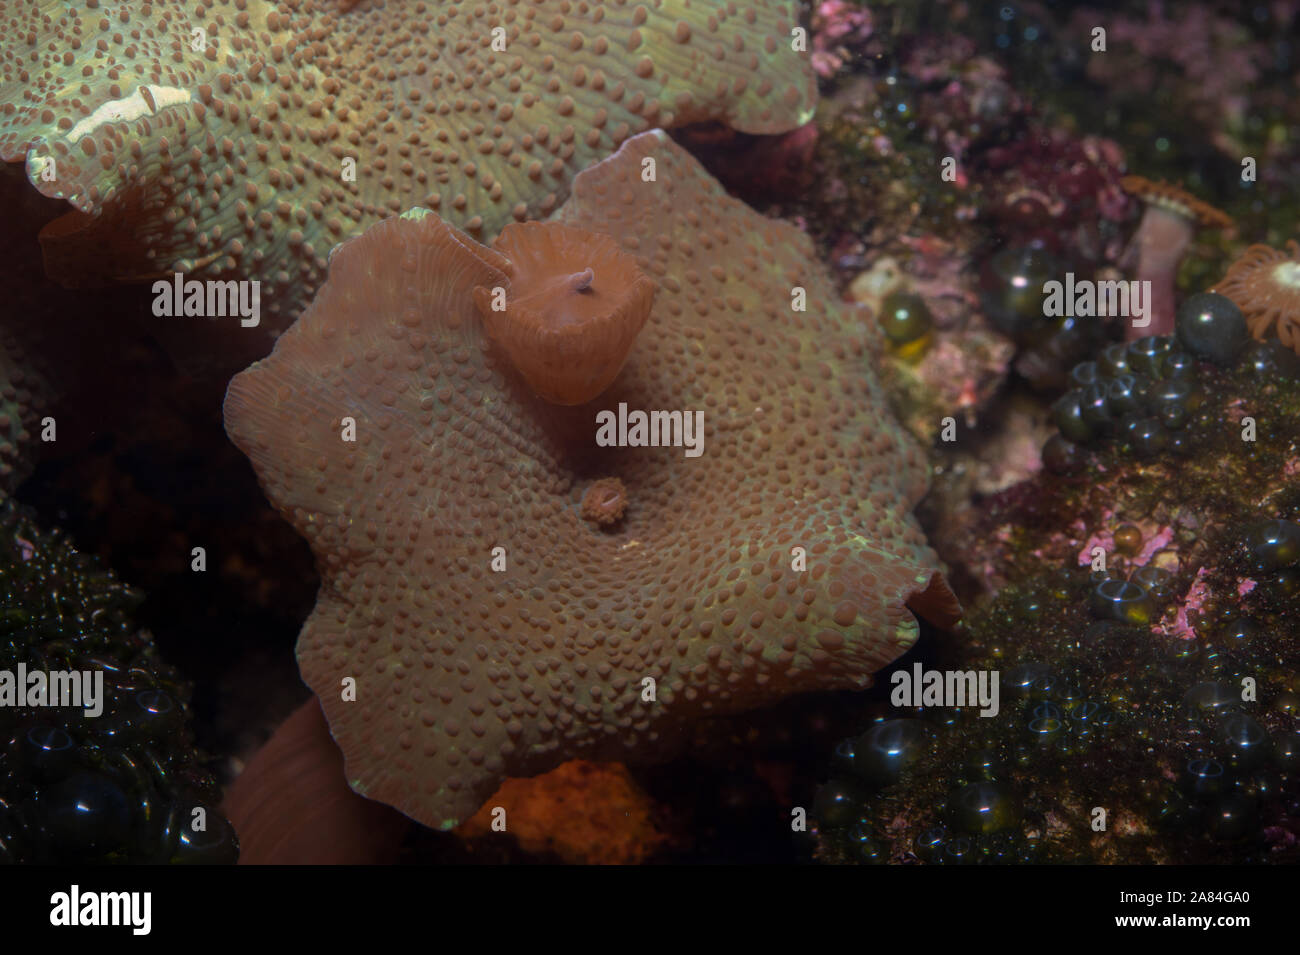 La riproduzione da parte di germogliamento del corallo a fungo, Discosoma sp., Discosomatidae, Bali, Indonesia, Indo-pacifico Foto Stock